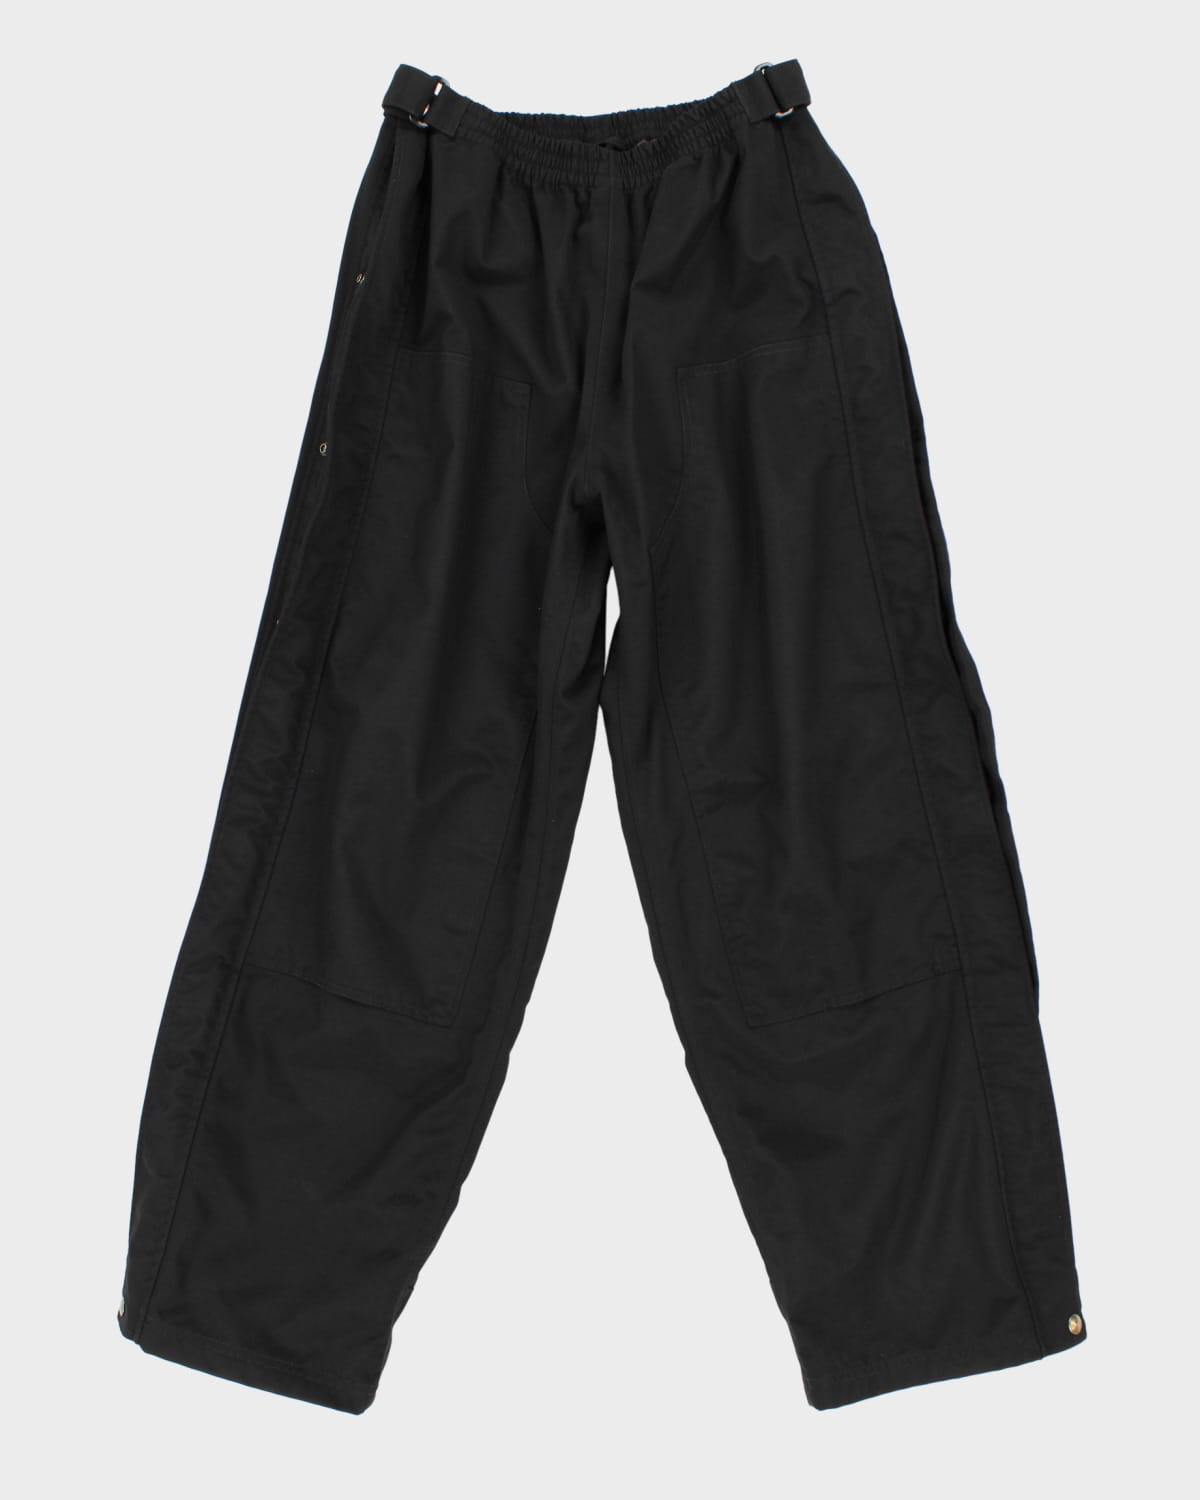 Heavy Duty Black Carhartt Trousers